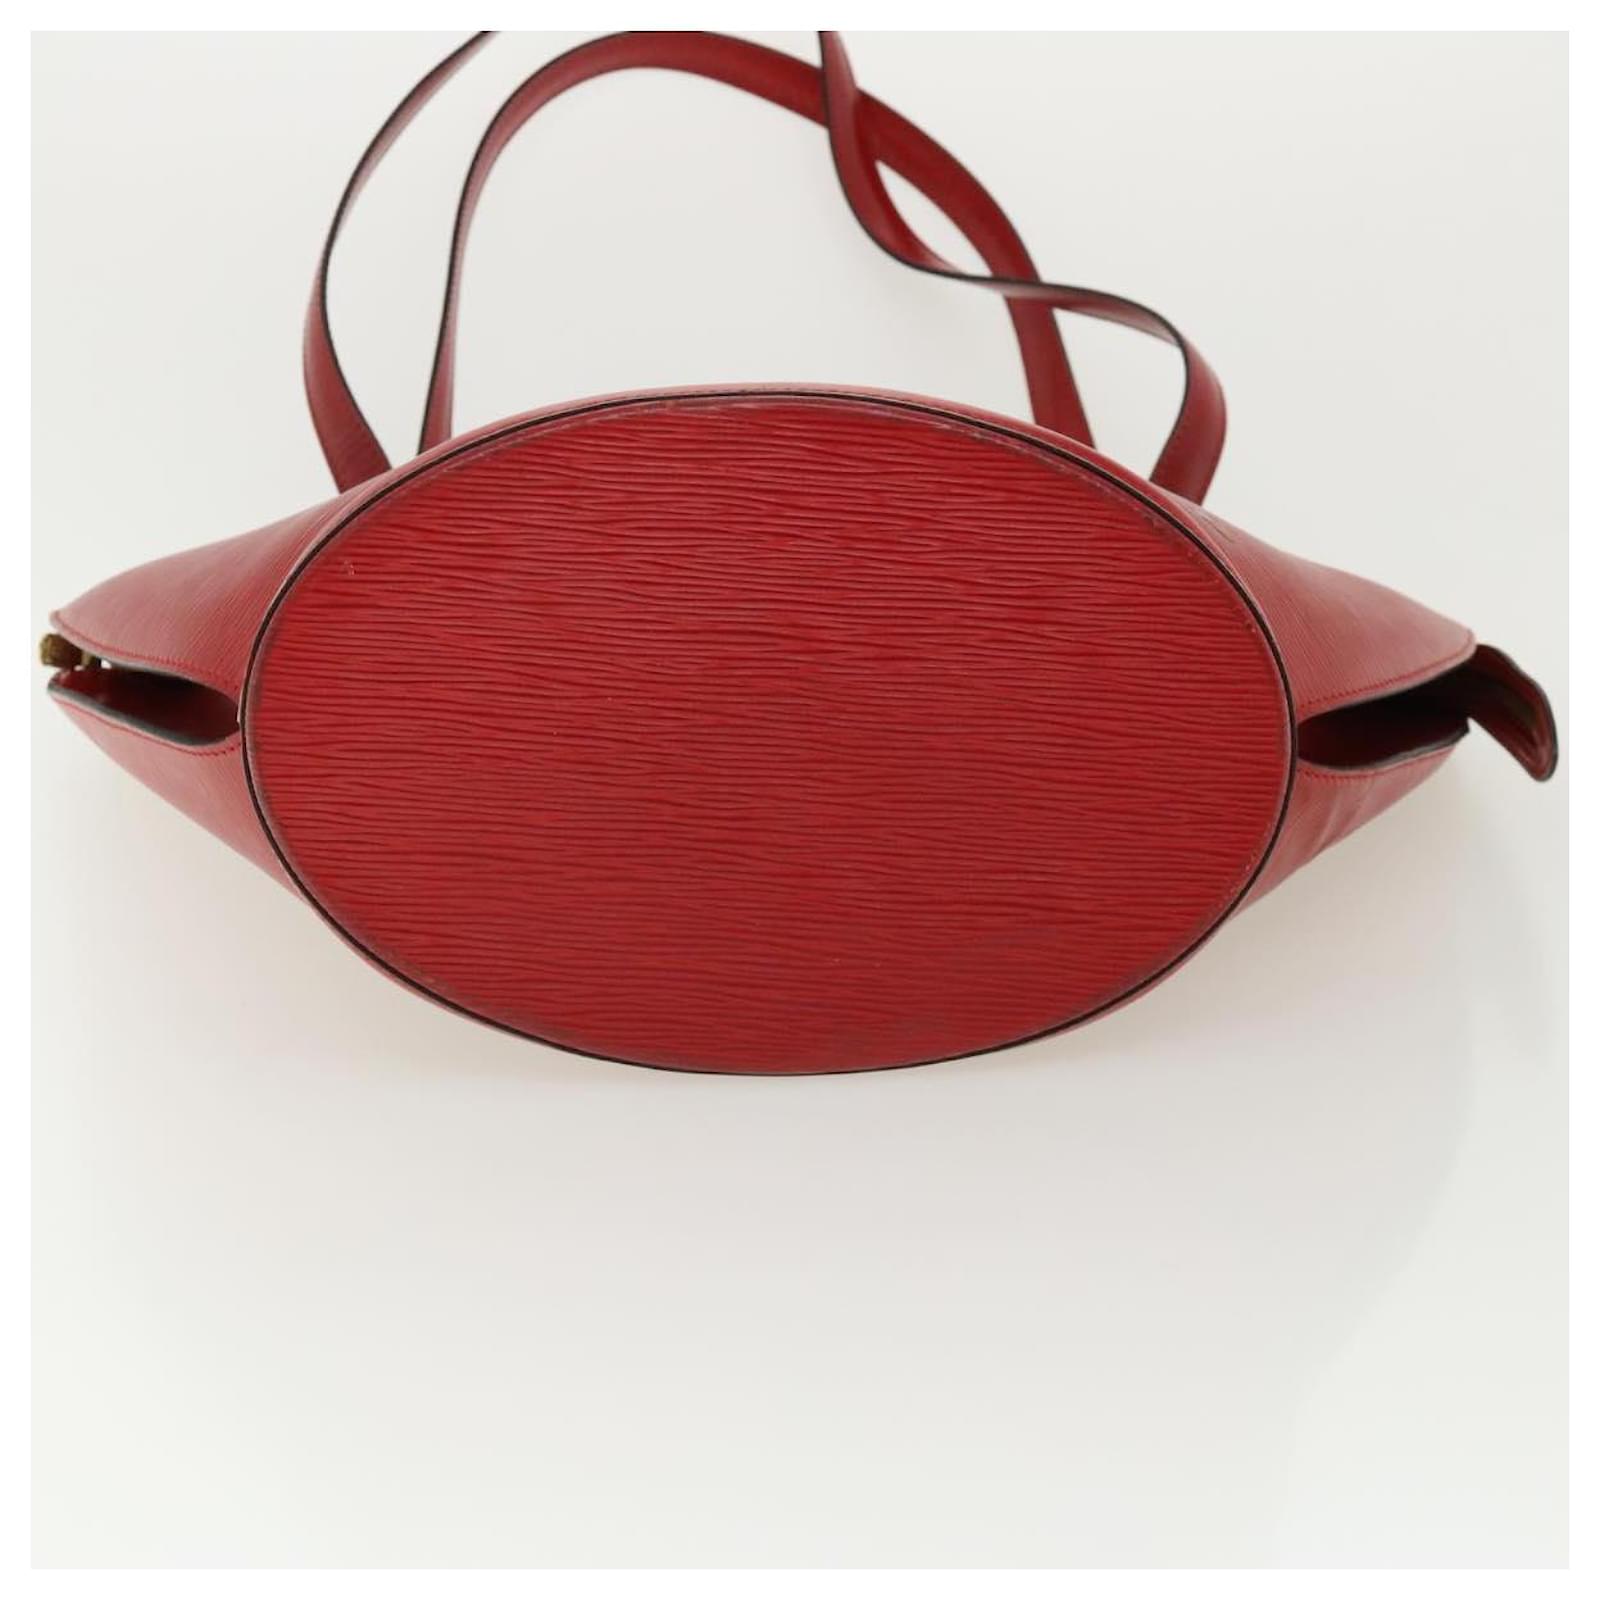 Louis Vuitton Saint Jacques PM Red Epi Handbag